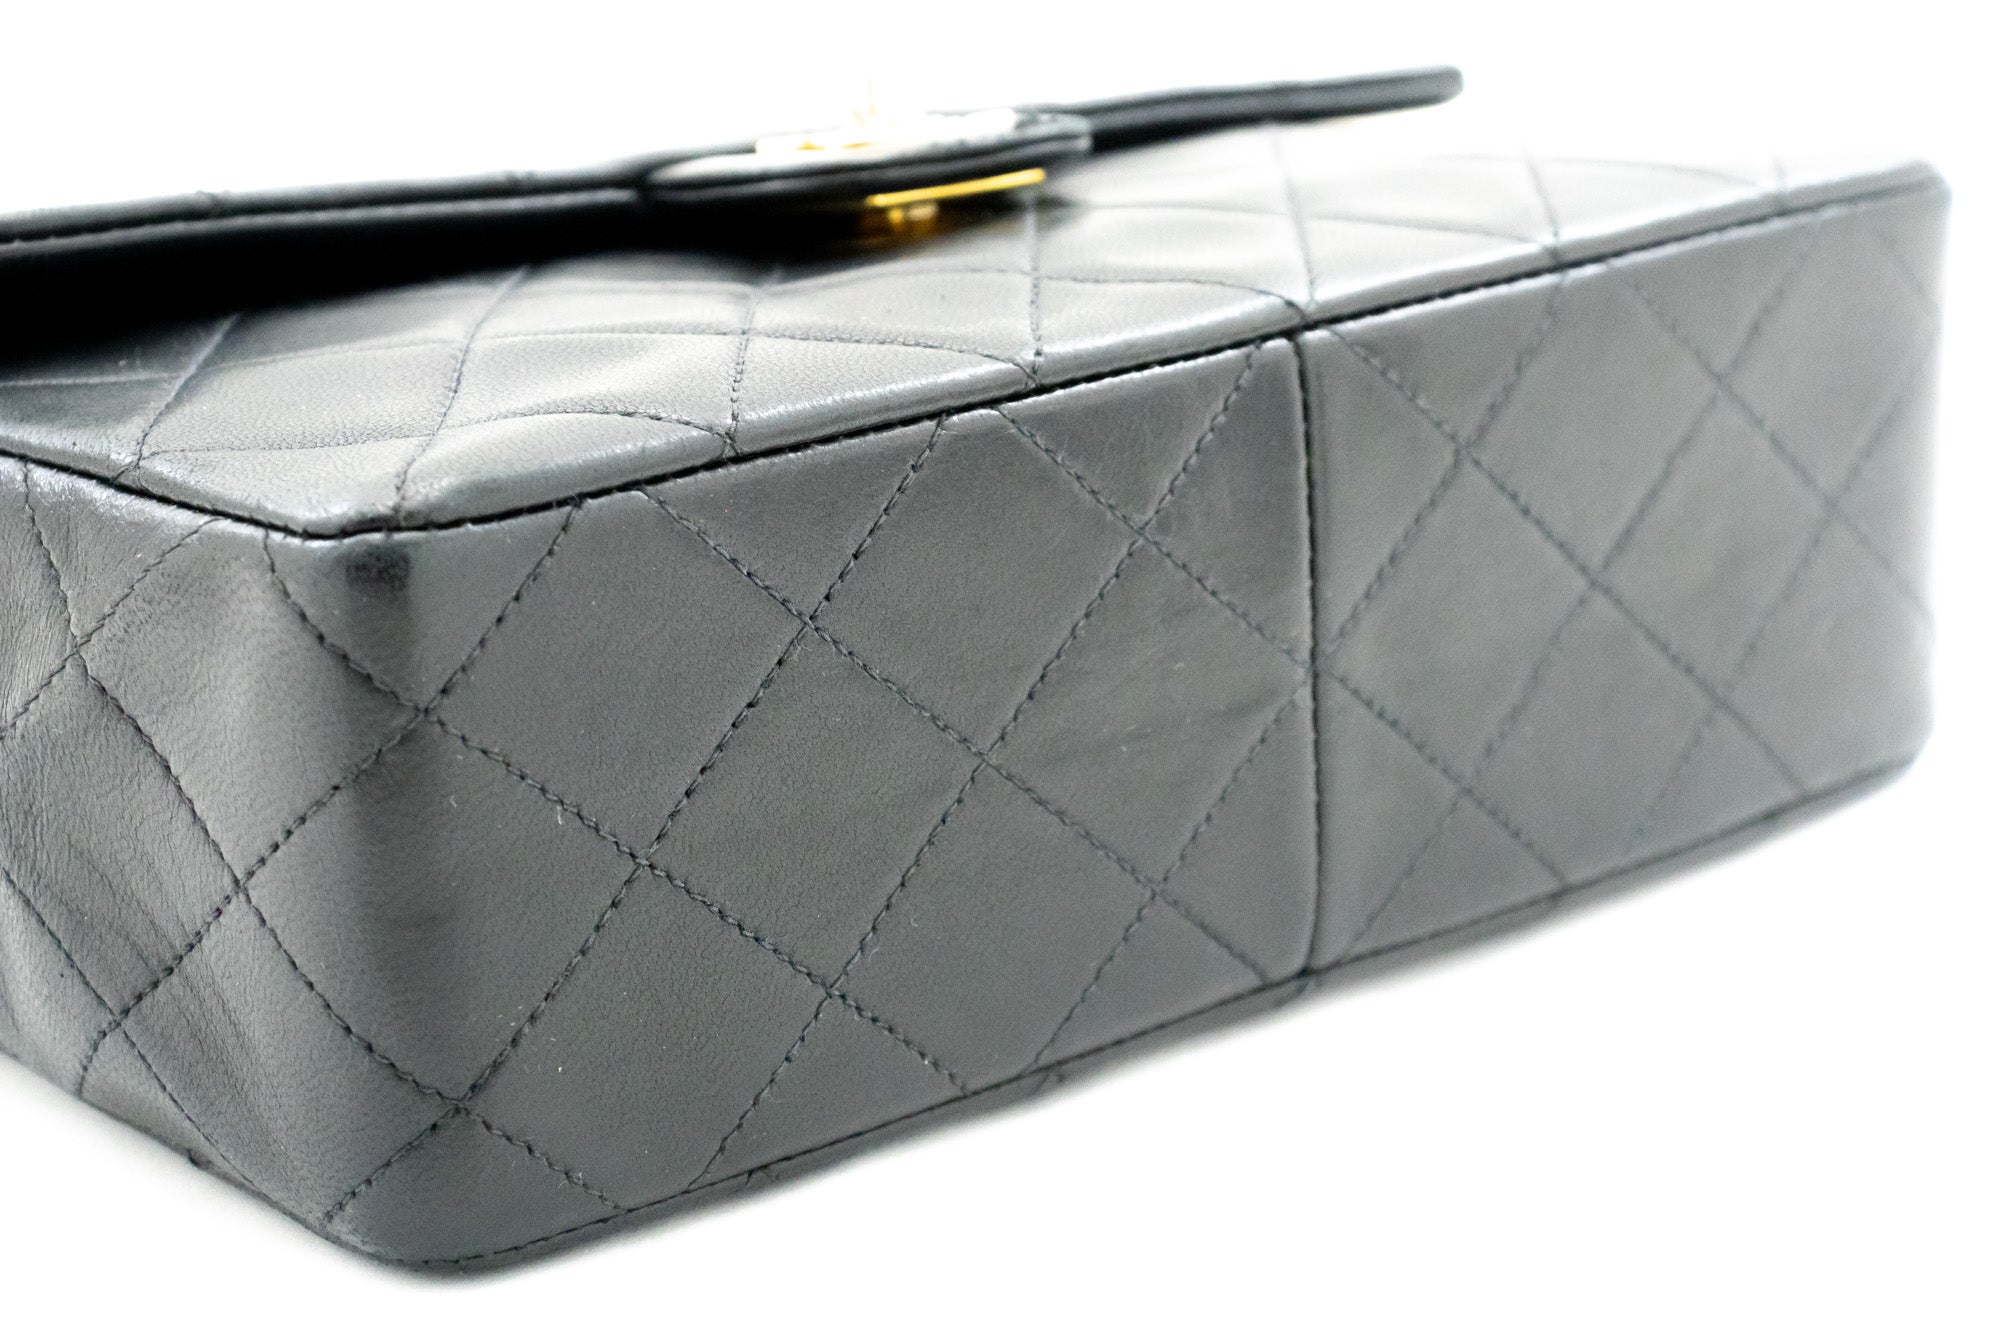 CHANEL Mini Square Small Chain Shoulder Bag Crossbody Black Quilt L03 –  hannari-shop